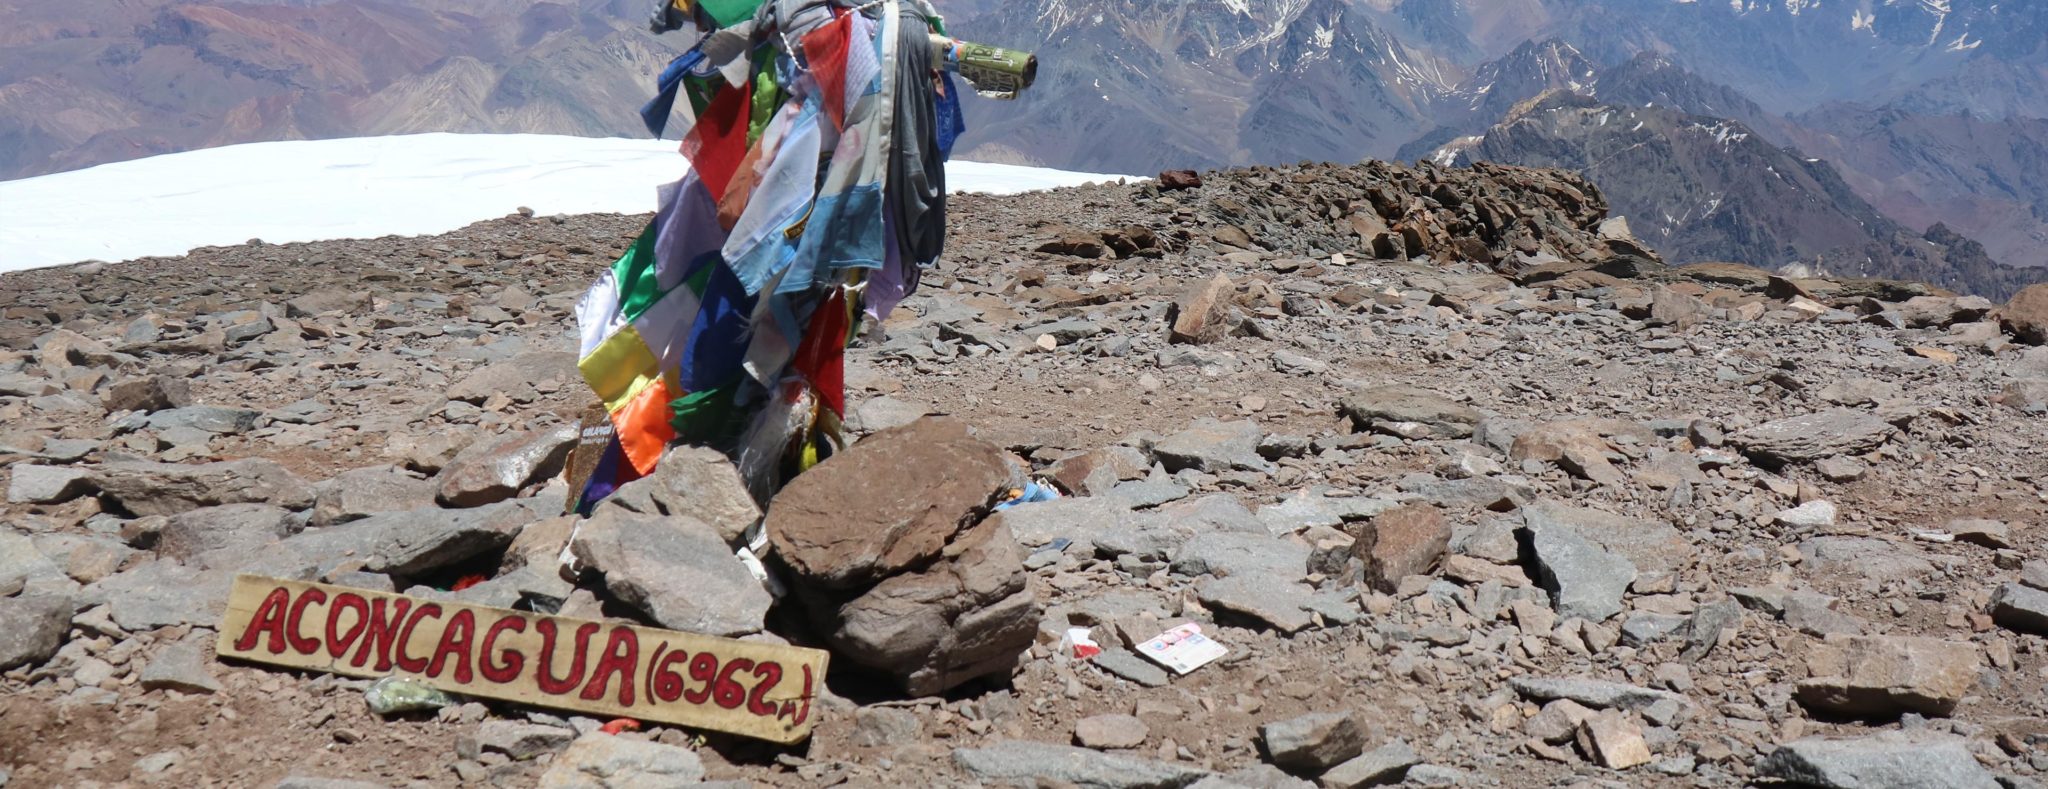 Aconcagua summit, 6962m